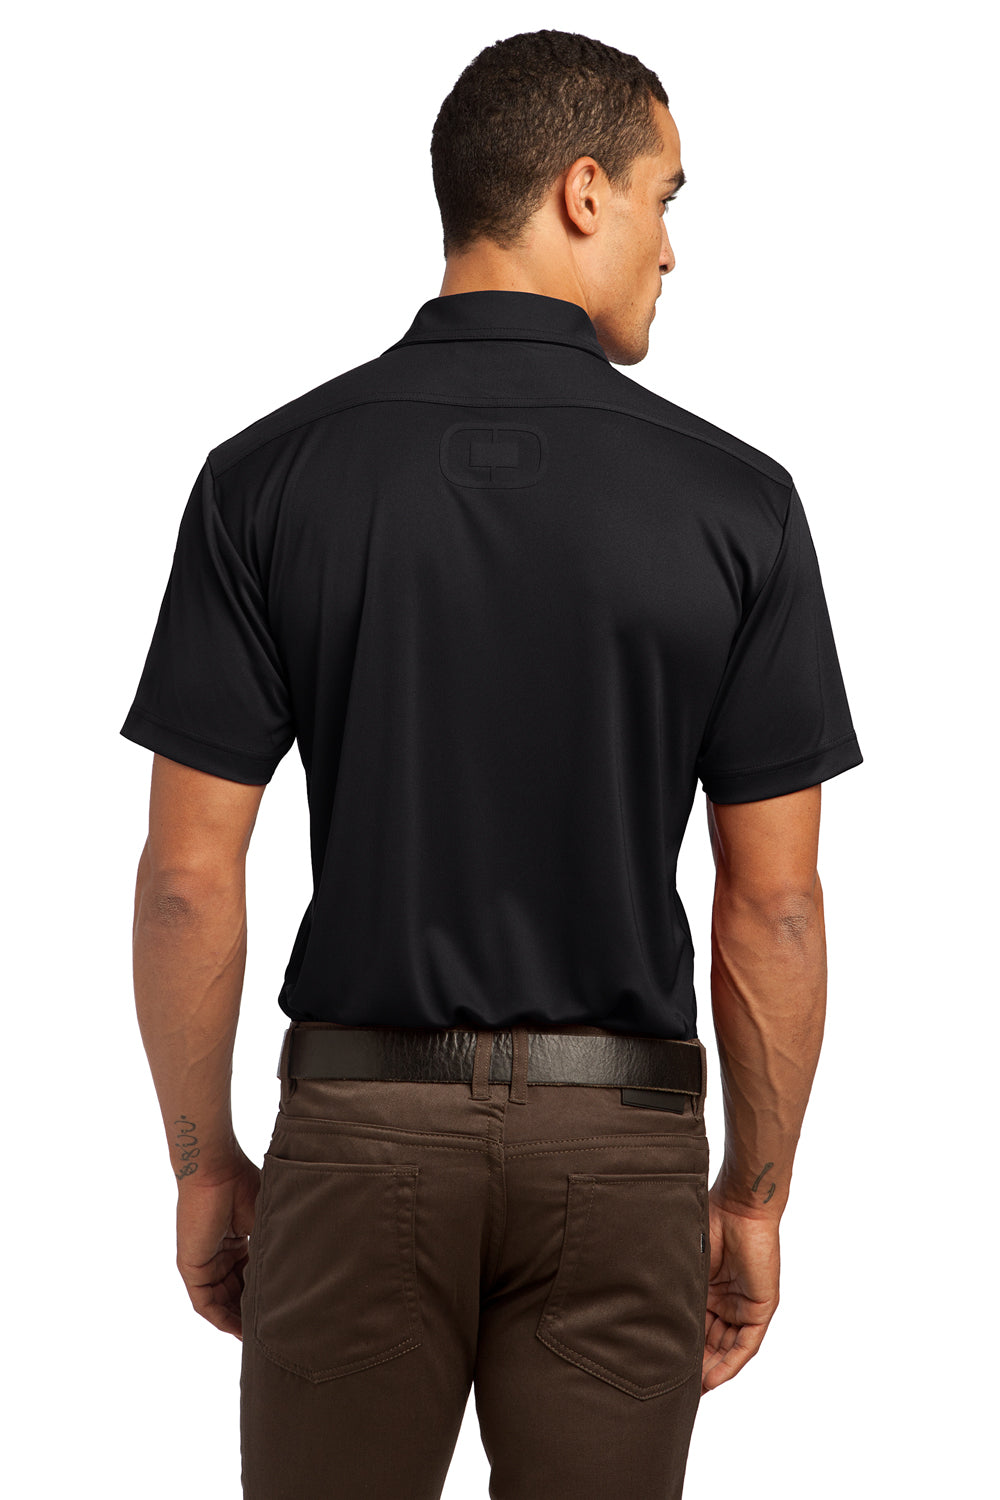 Ogio OG109 Mens Hybrid Moisture Wicking Short Sleeve Polo Shirt Black Back